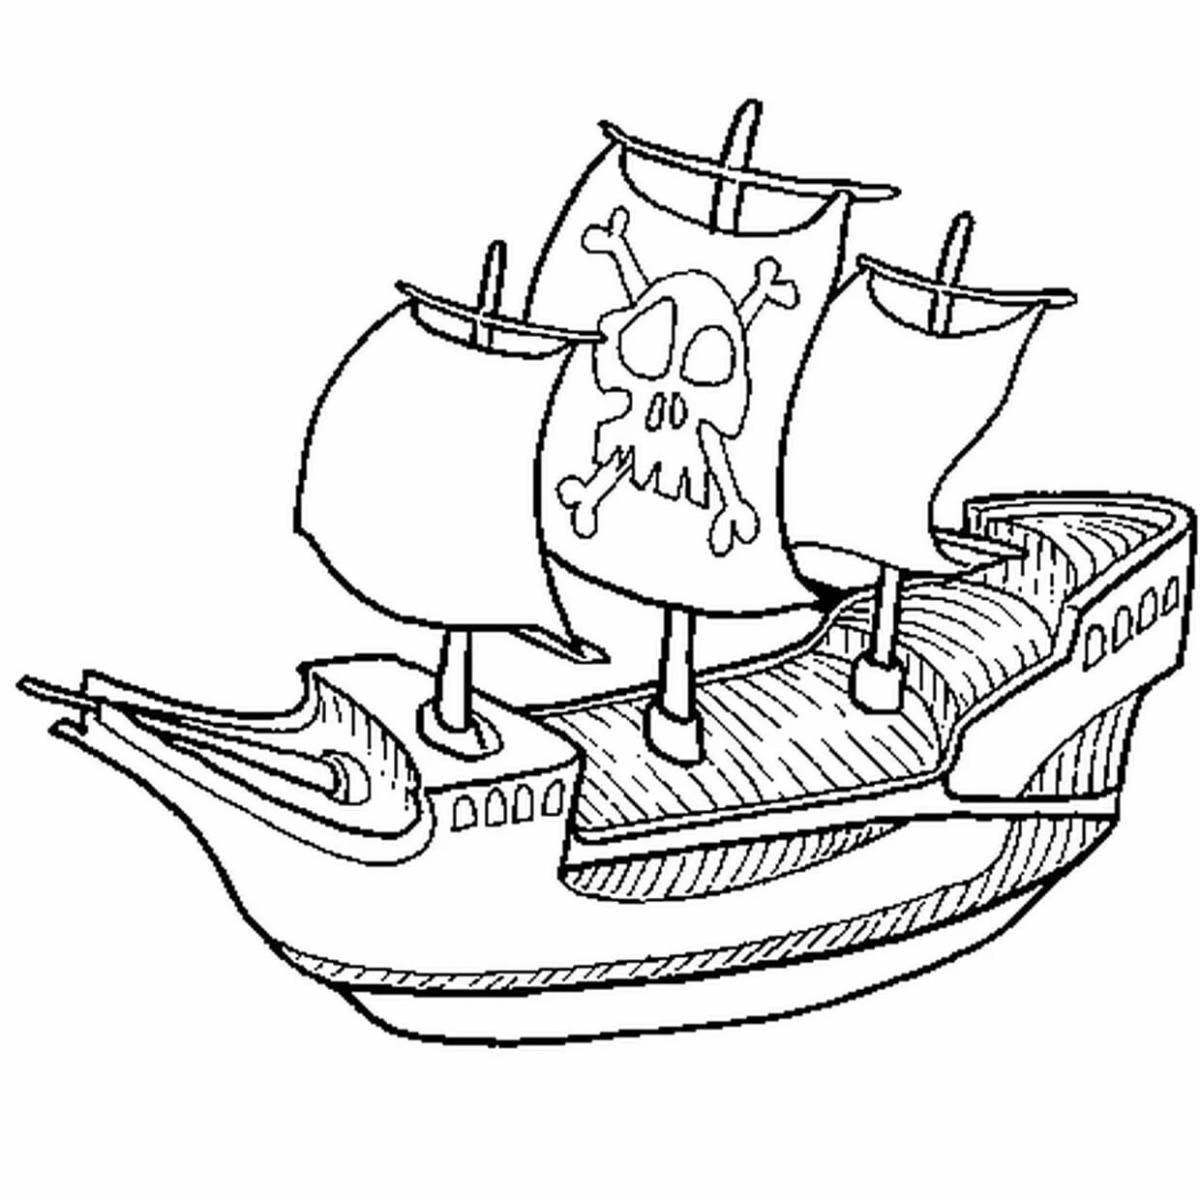 Драматическая раскраска пиратского корабля для детей